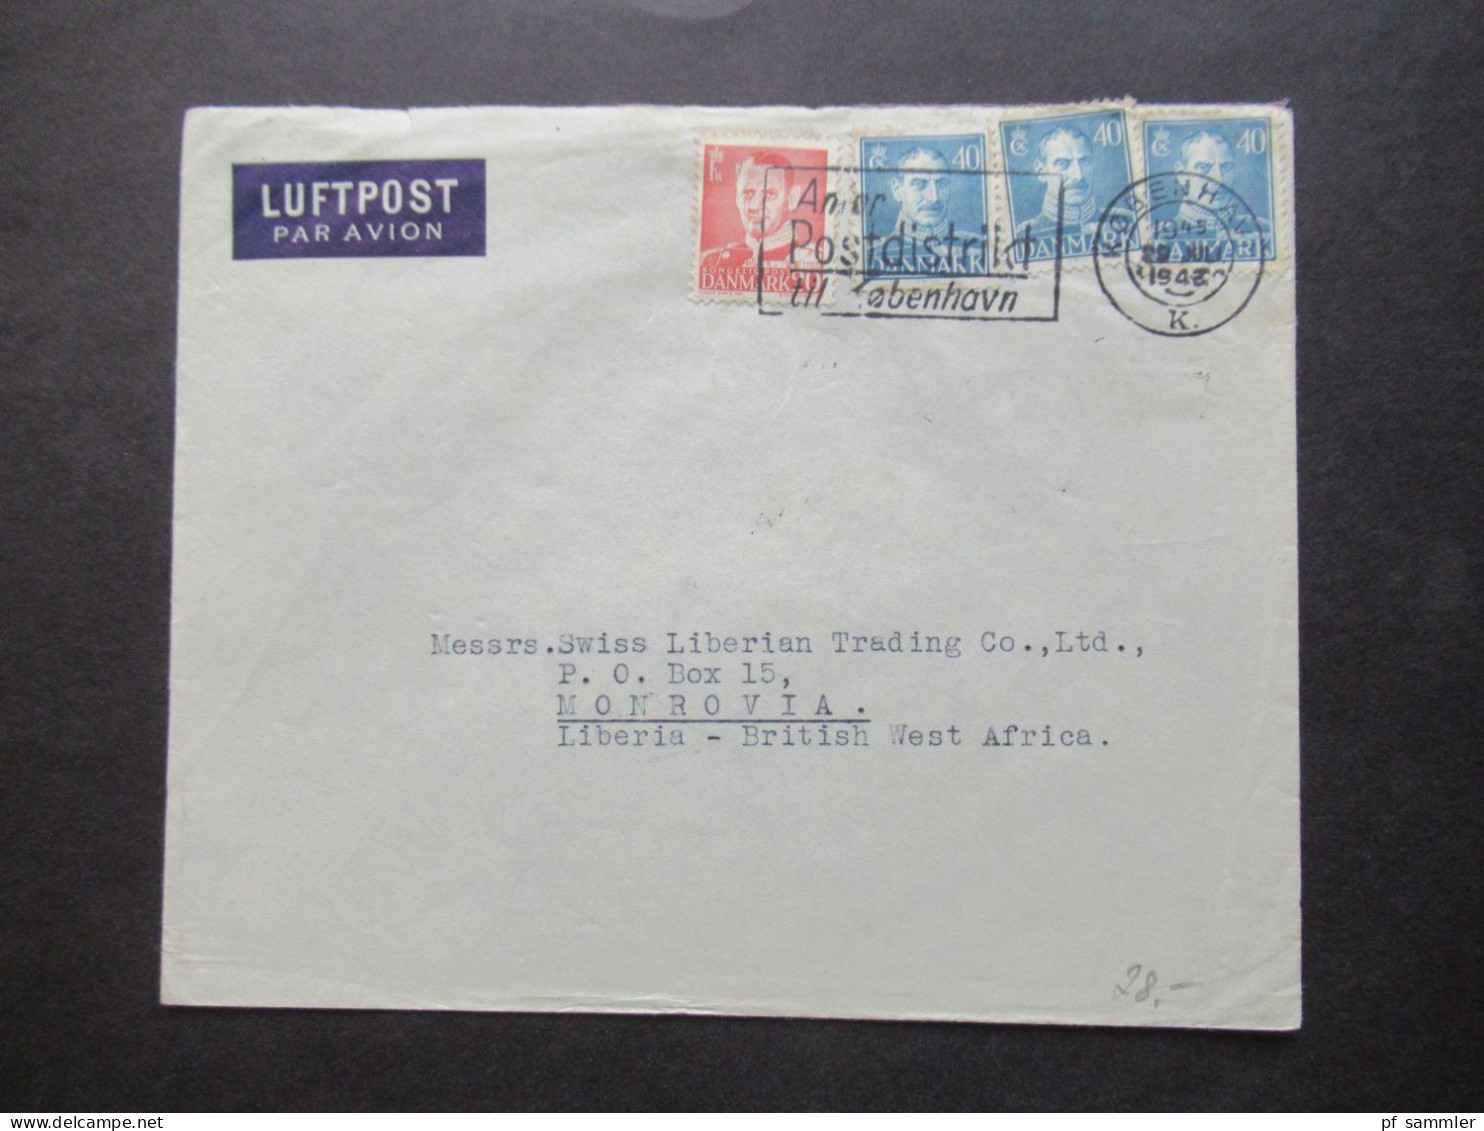 Dänemark 1948 MiF Mit Luftpost Nach Monrovia Liberia British West Africa Mit Ank. Stempel / Schöne Destination! - Brieven En Documenten